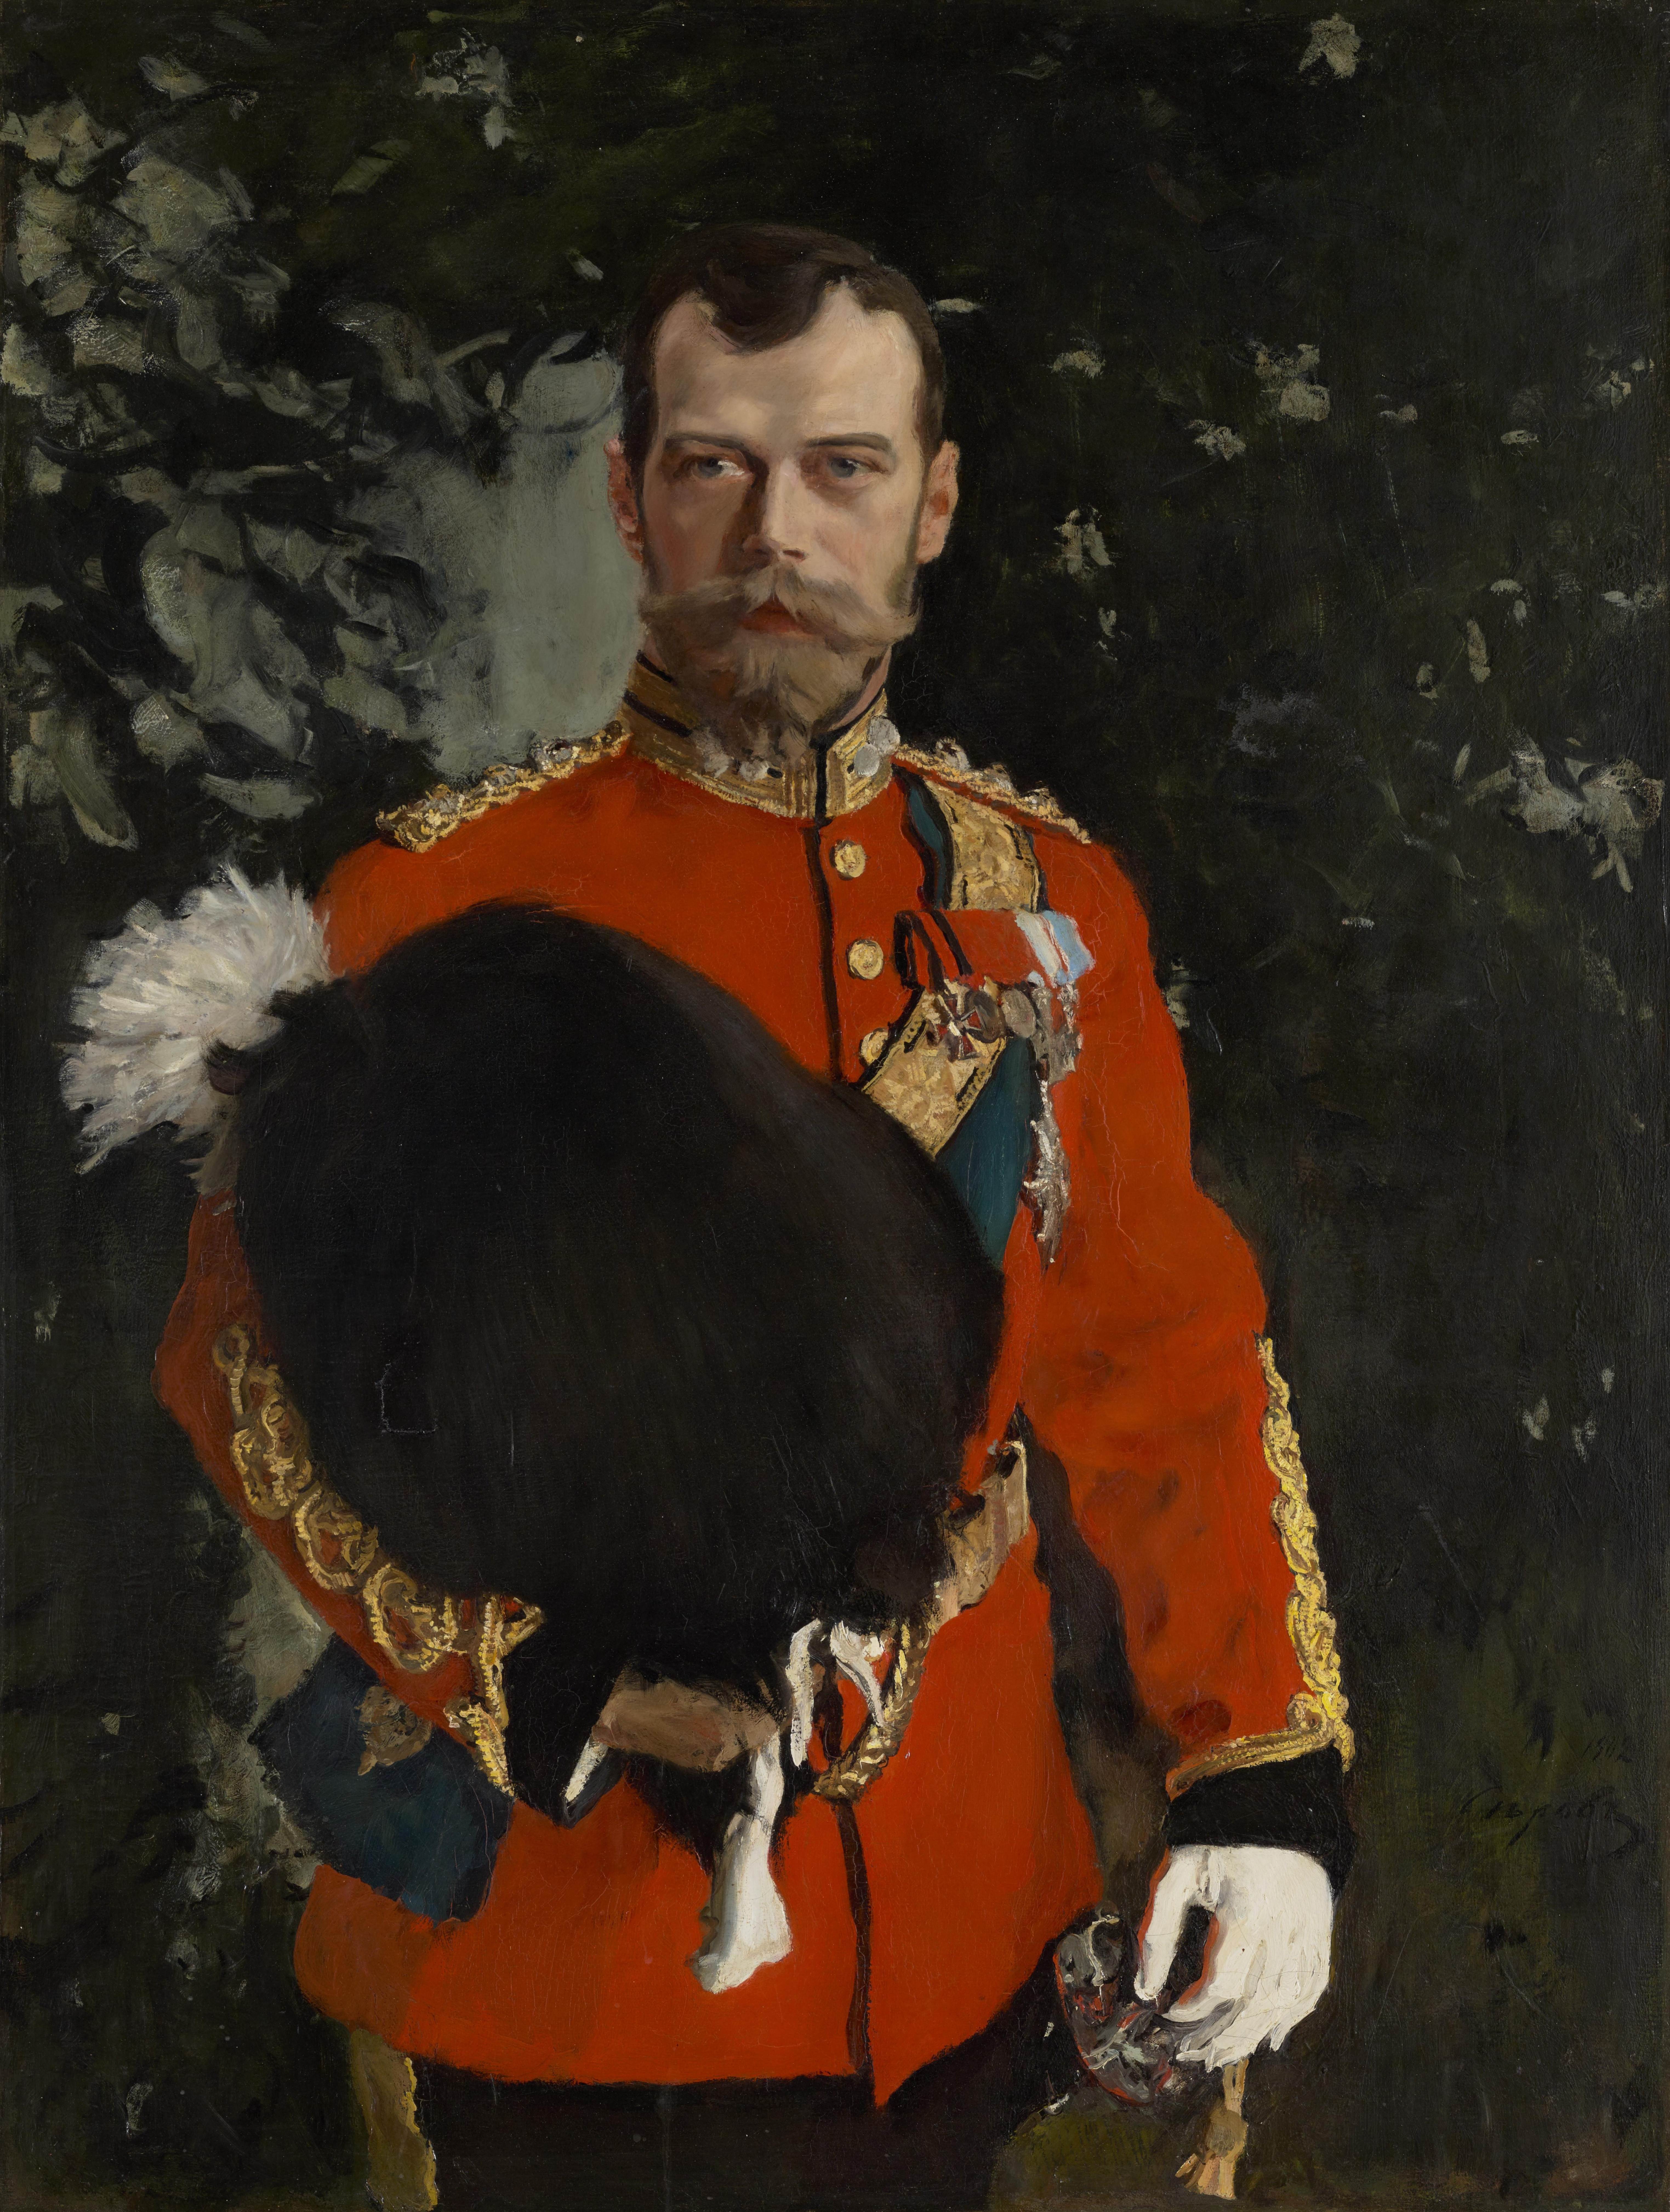 俄国沙皇尼古拉二世·亚历山德罗维奇陛下画像portrait of his